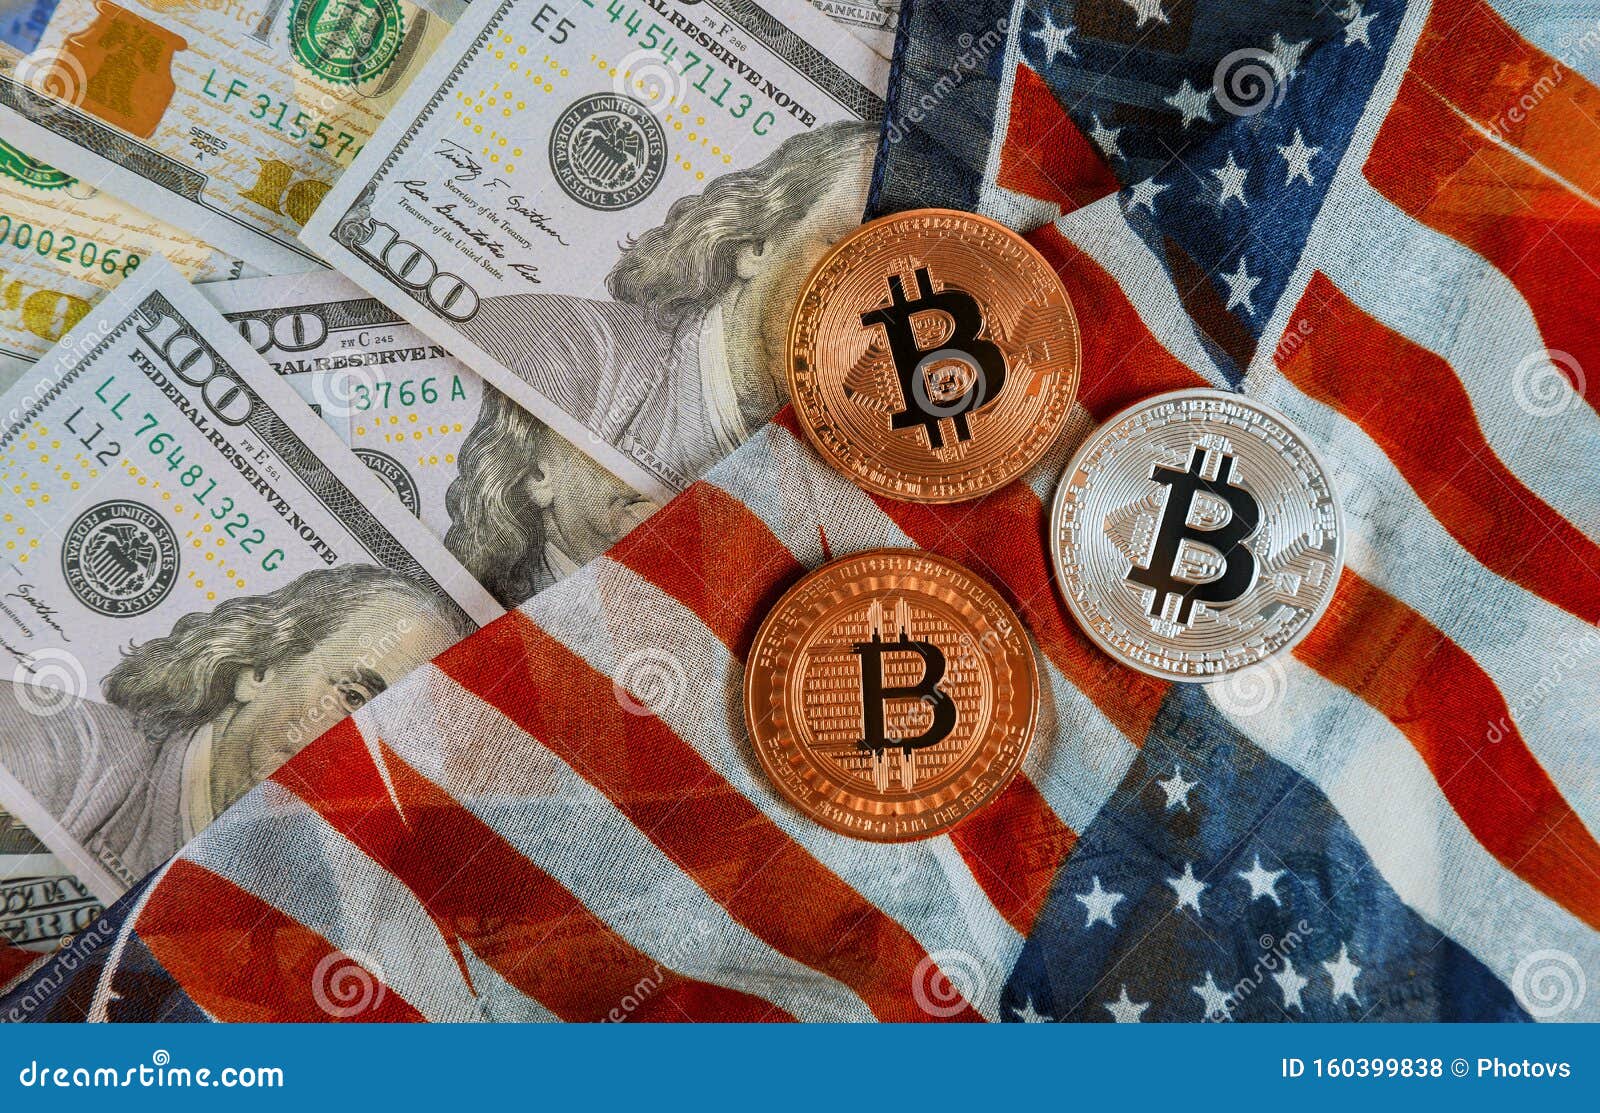 america bitcoin